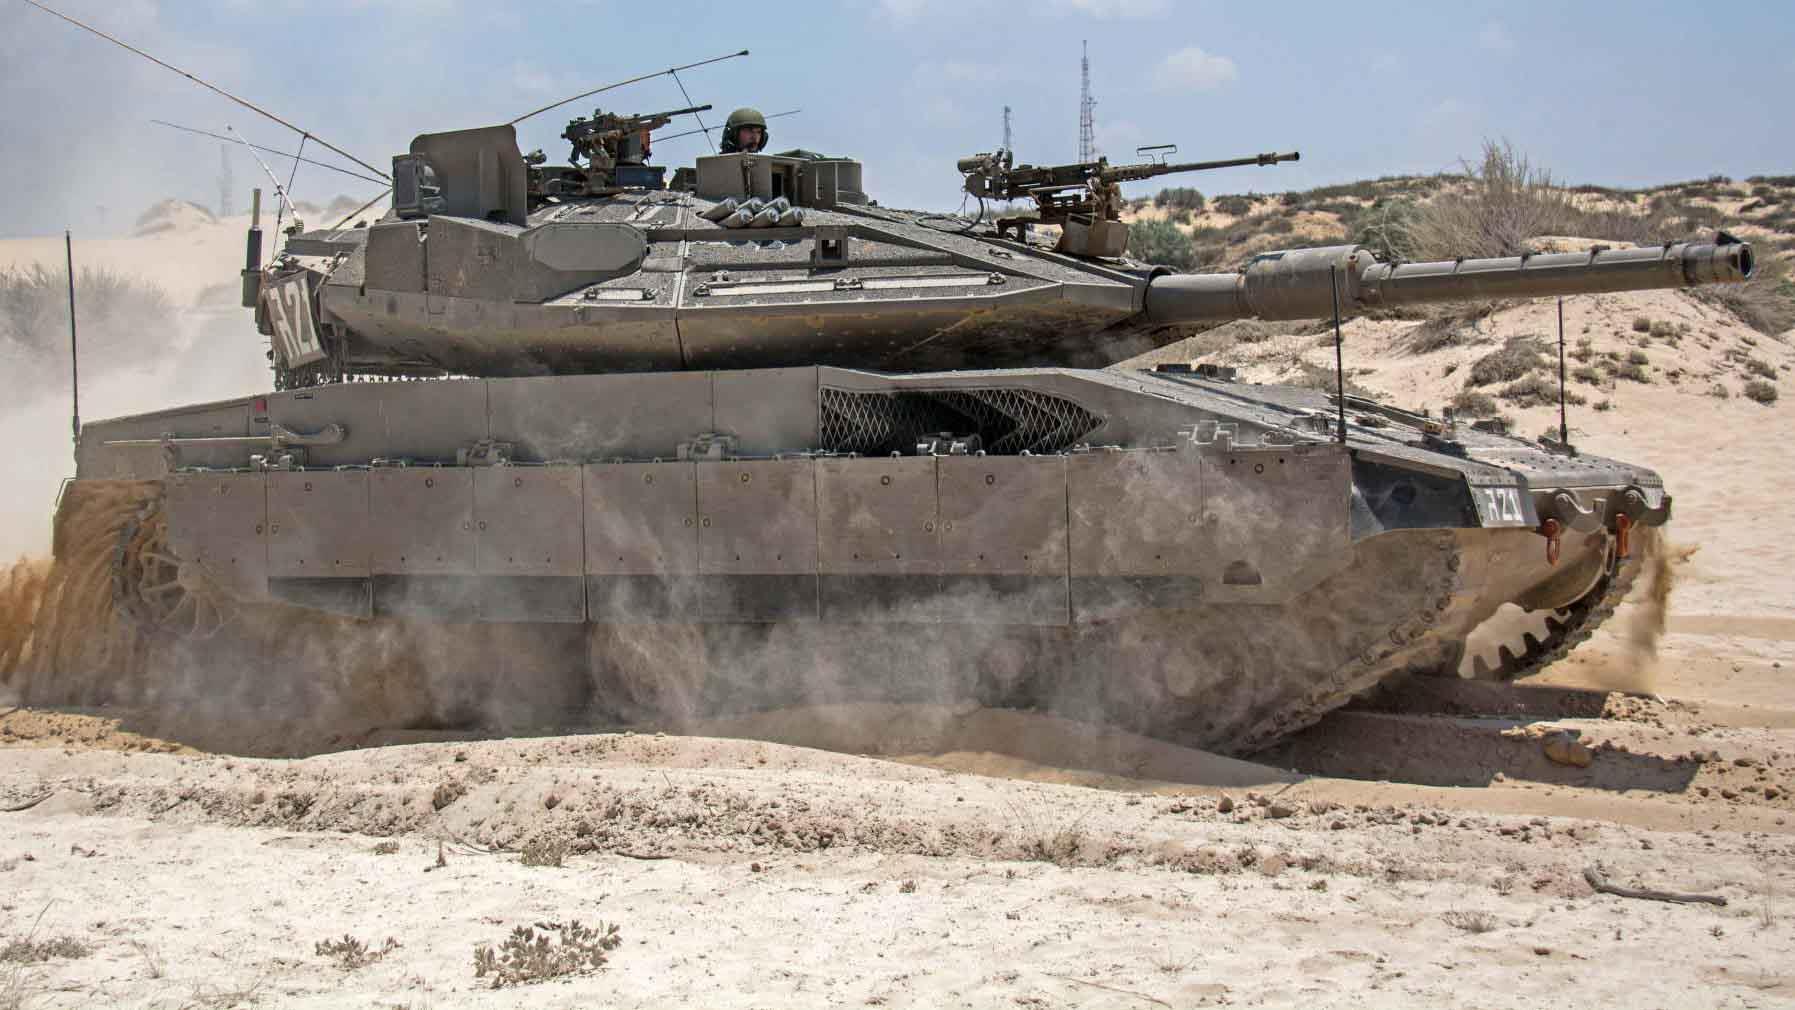 استهداف دبابة ميركافا الإسرائيلية